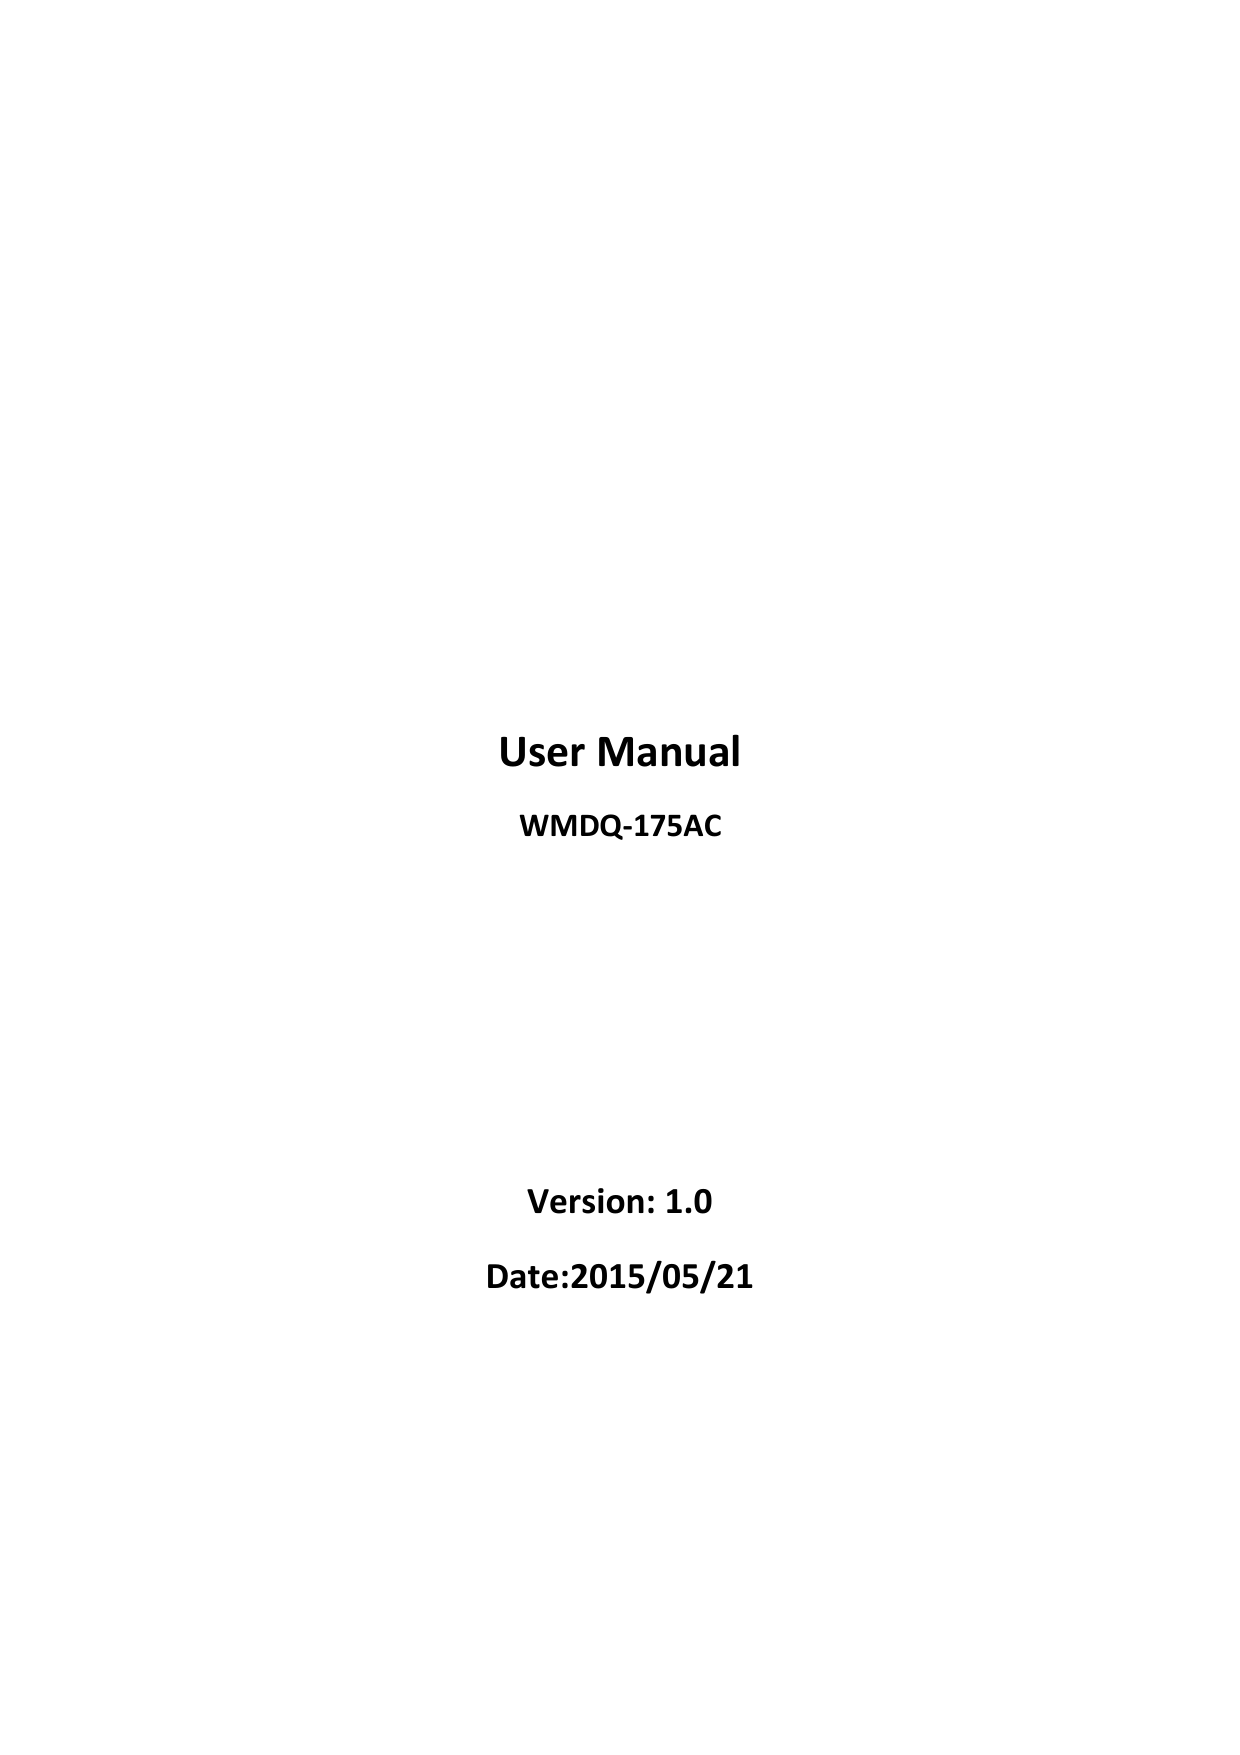                                                        User Manual WMDQ-175AC     Version: 1.0 Date:2015/05/21     